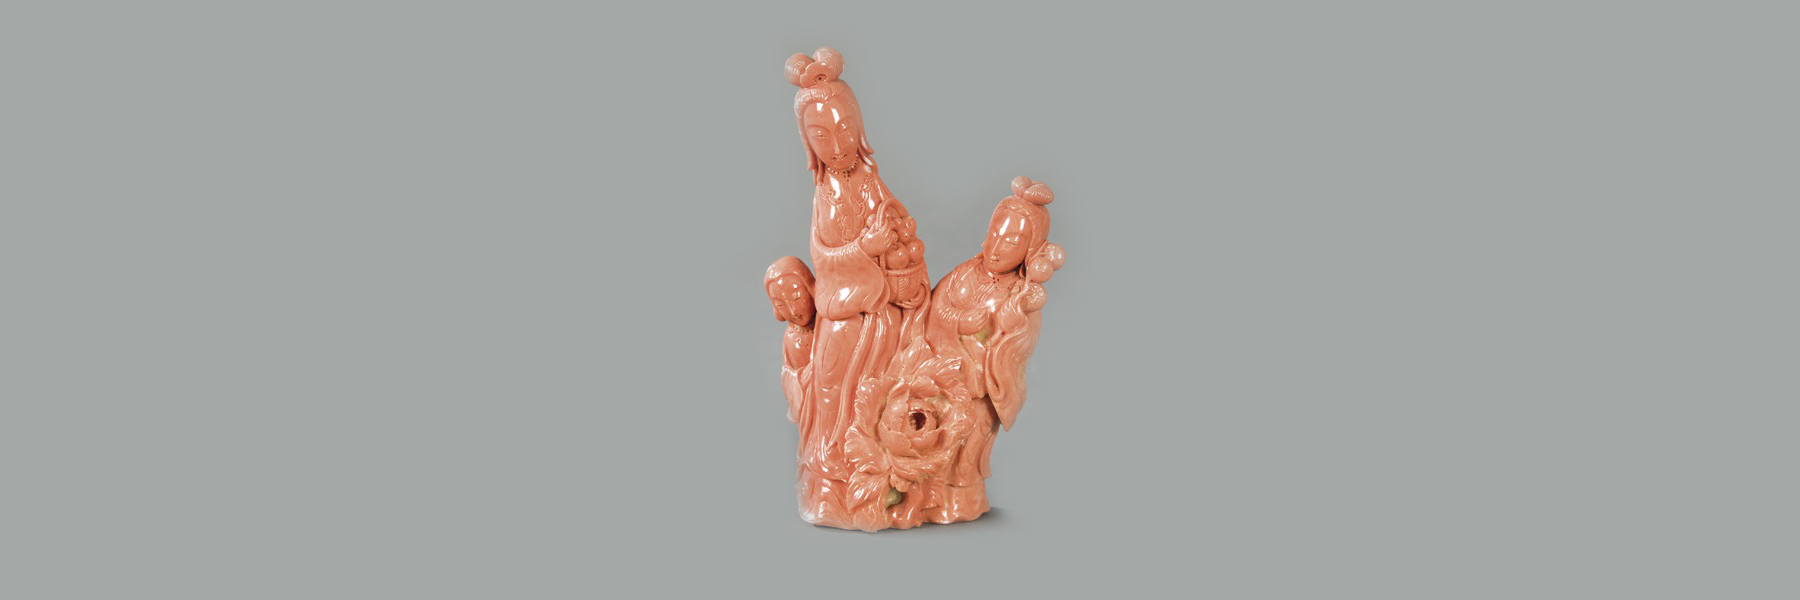 Segre vende por 4.000 euros una figura de coral tallado